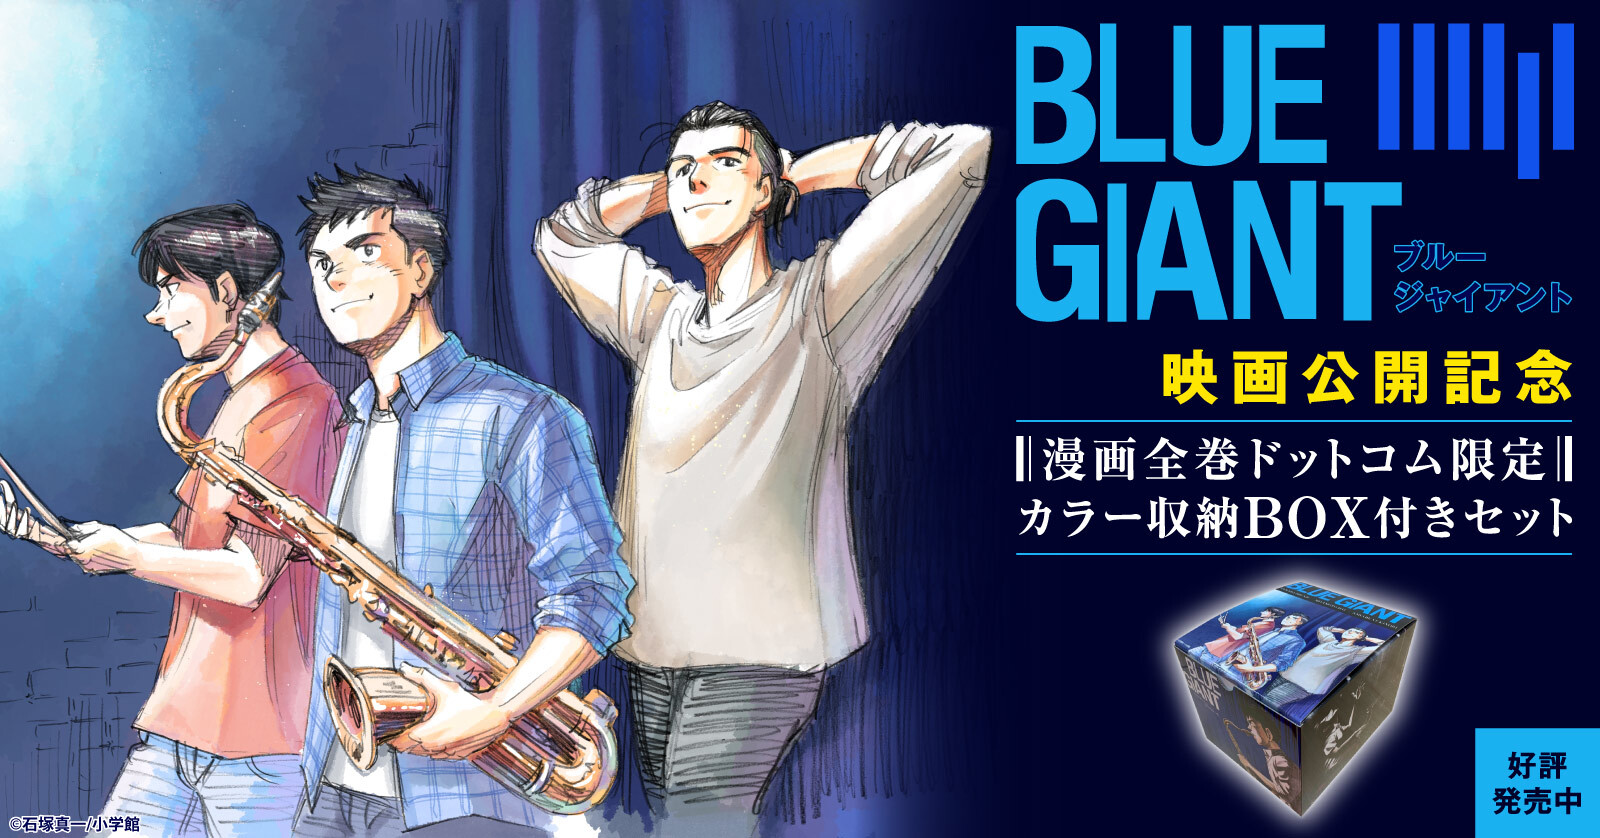 ブルージャイアント BLUE GIANT (1-10巻 全巻) +オリジナル収納BOX付 